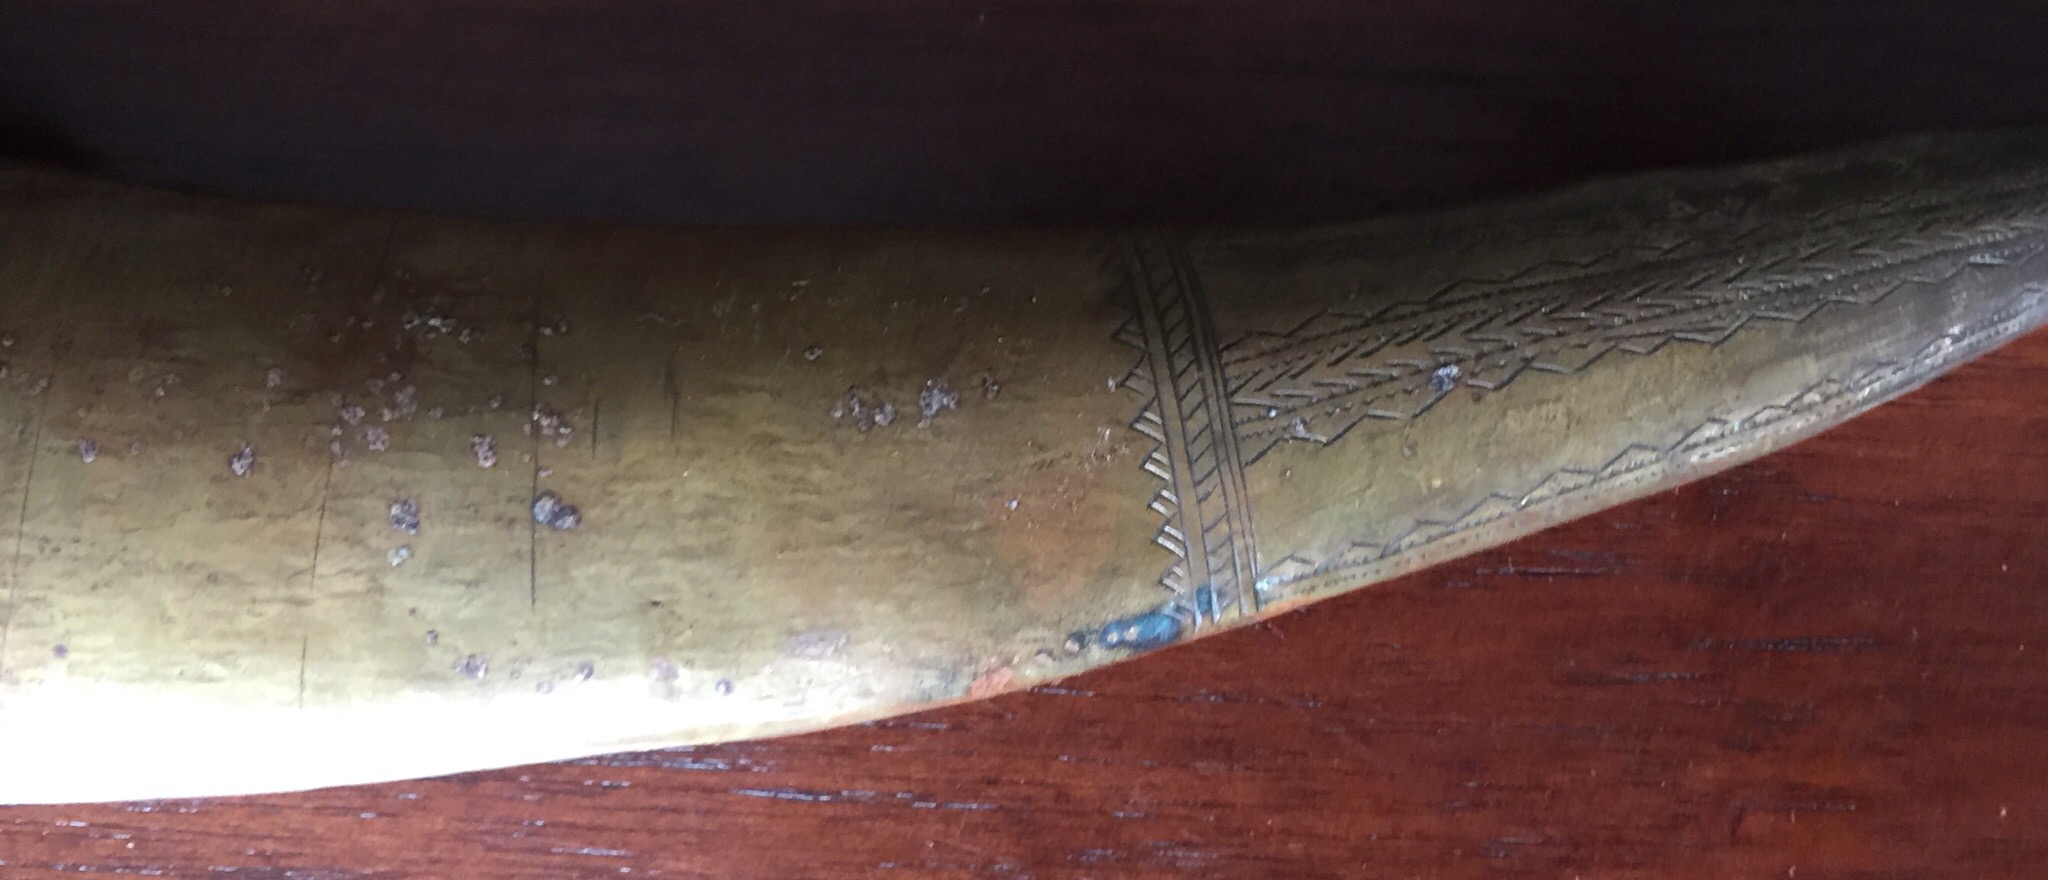 Antique Arab Persian Sword Saber Dagger Jambiya Khanjar Bedwan Engraved Islamic